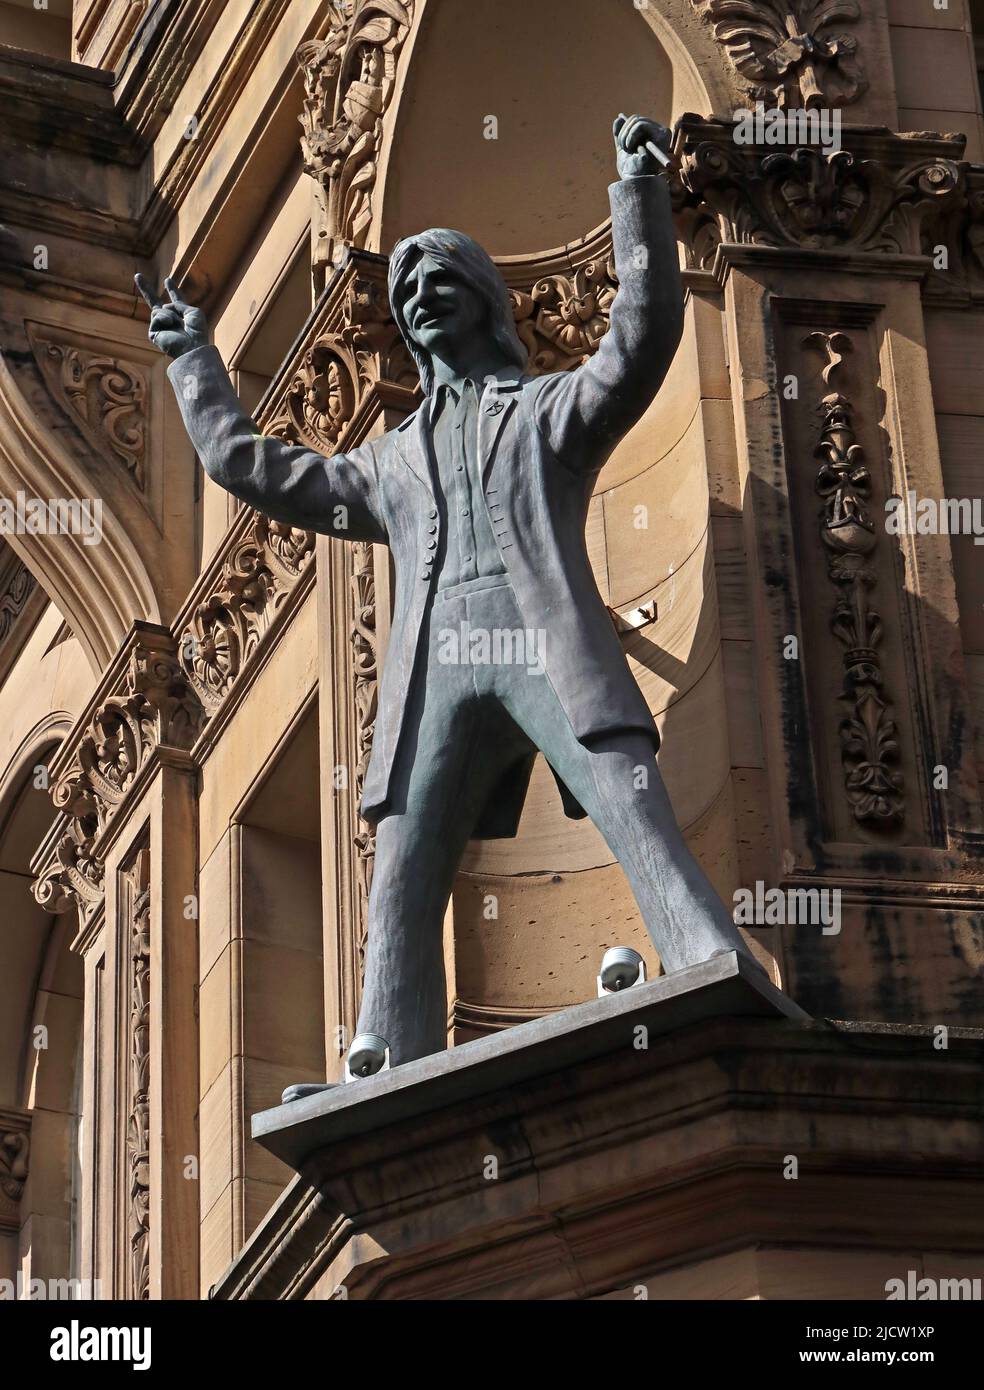 Ringo Starr - The Liverpool Beatle statues - The Fab four, autour de l'extérieur de Hard Day's Night Hotel, Central Buildings, N John St, Liverpool L2 6RR Banque D'Images